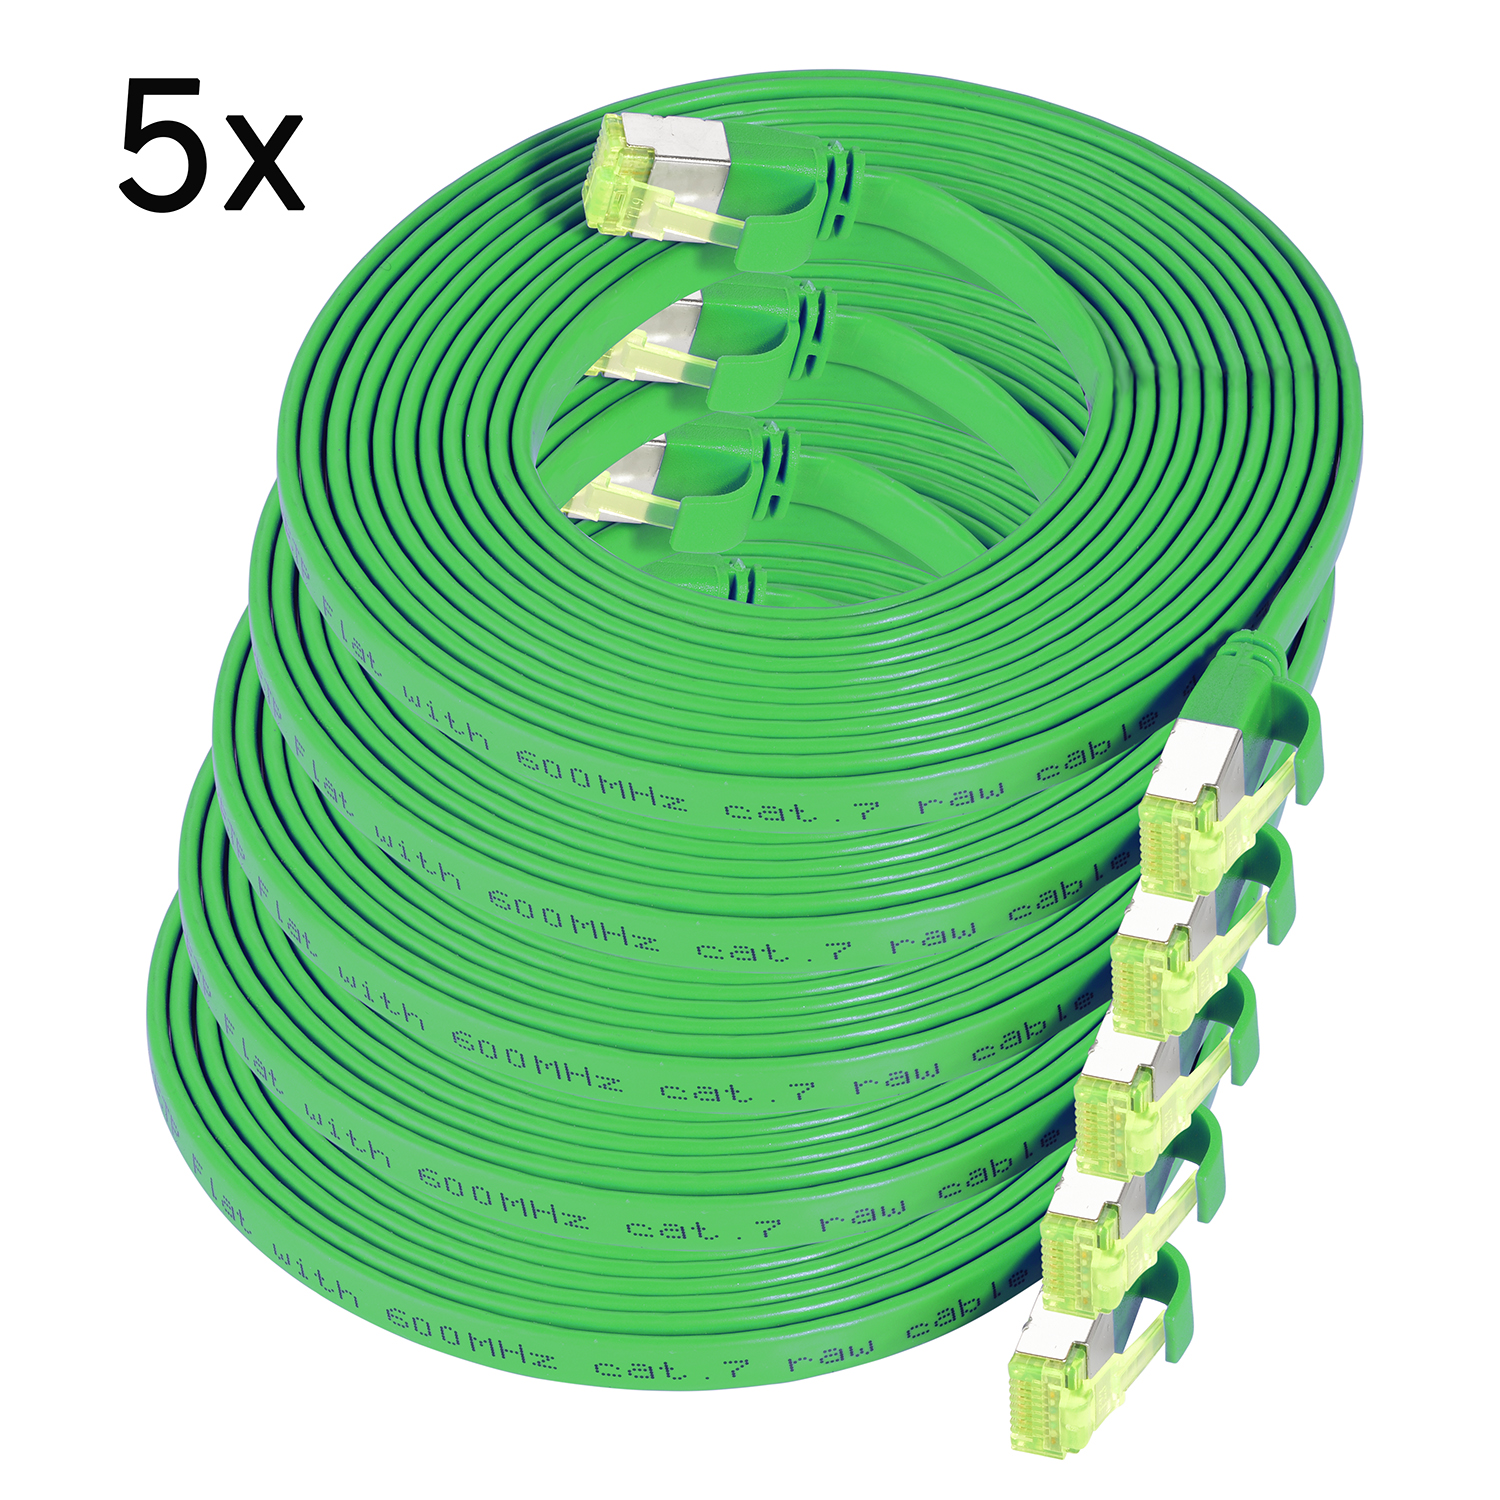 TPFNET 5er Pack 1m Patchkabel grün, / 10 U/FTP Netzwerkkabel, m Flachkabel 1 GBit